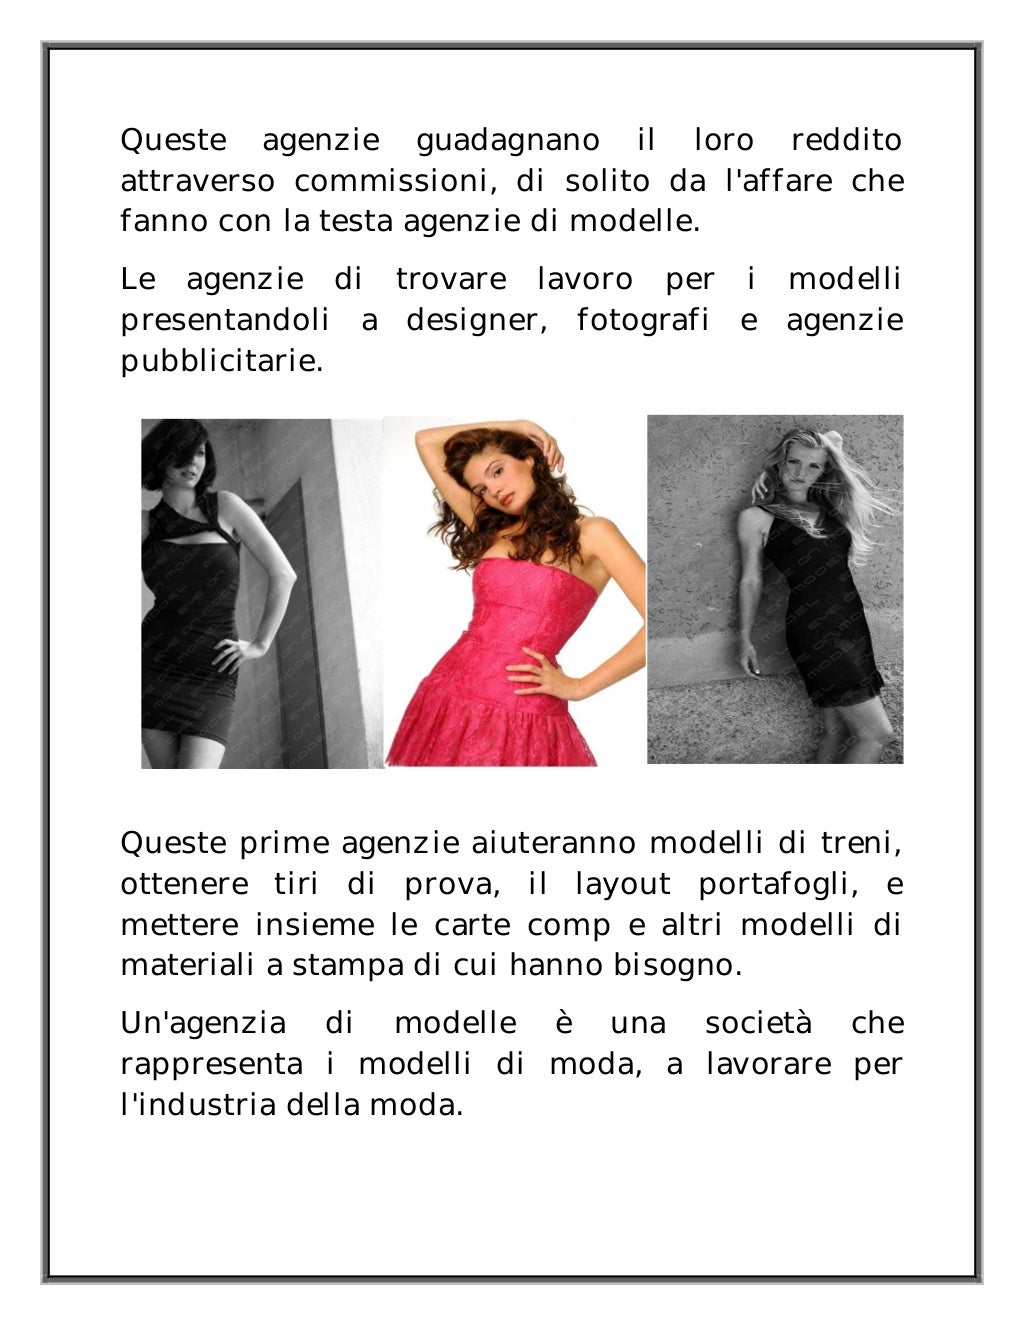 Modelle ed hostess a Firenze nel sfilate, showroom, pubblicità ed eventi